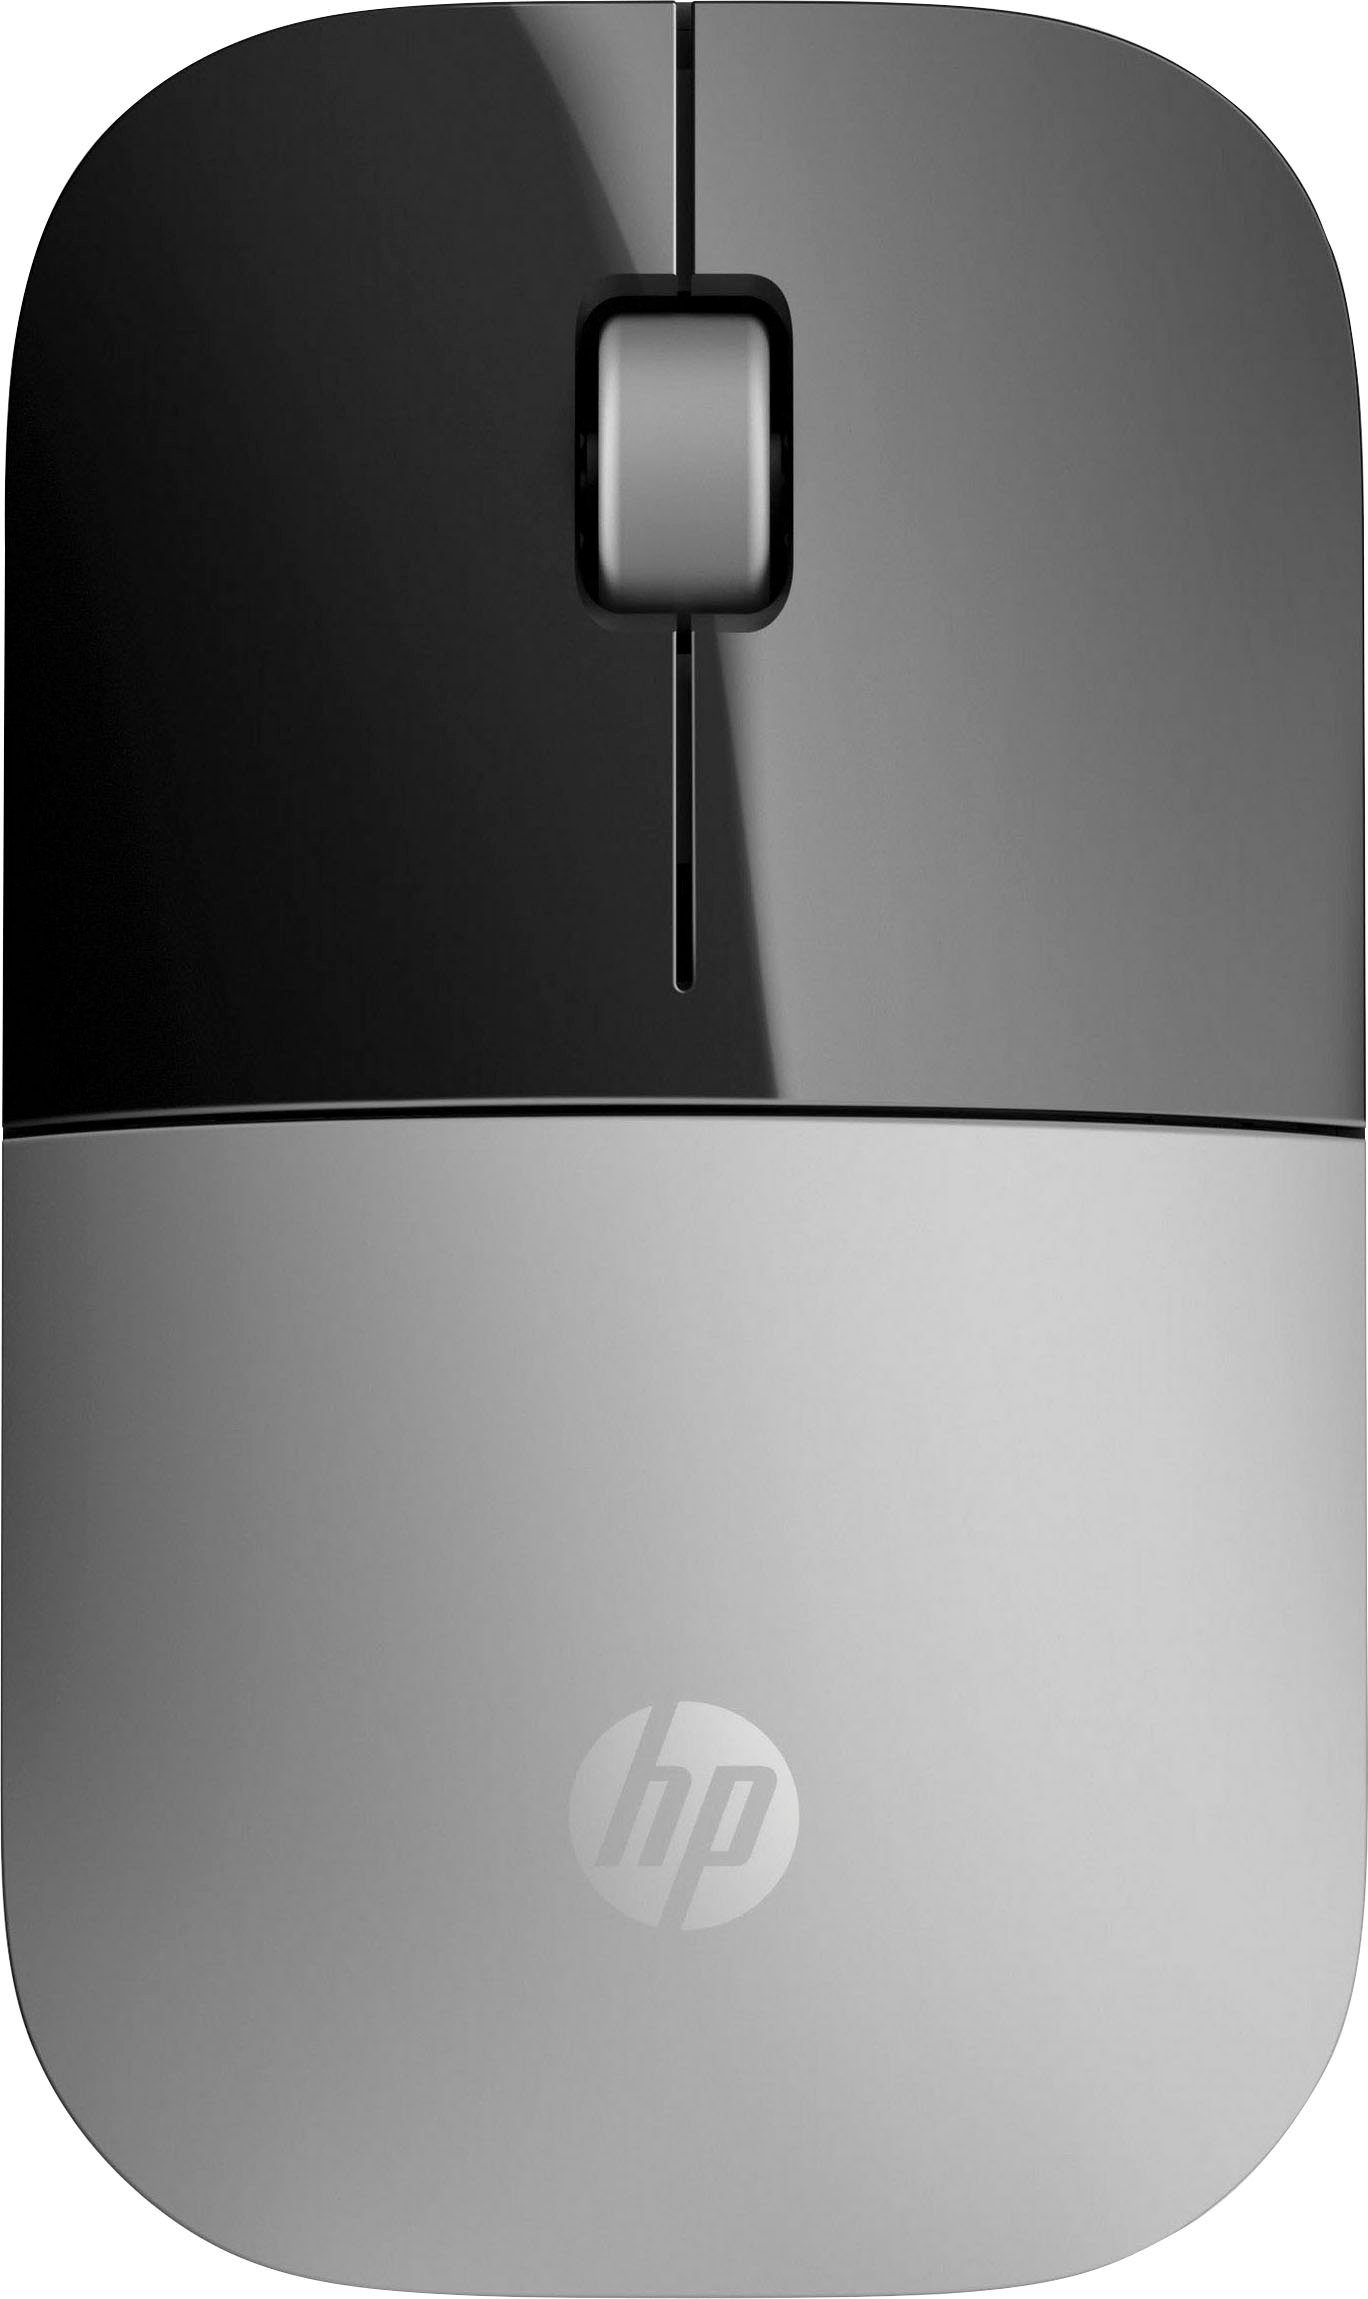 HP Z3700 schwarz/silberfarben Maus